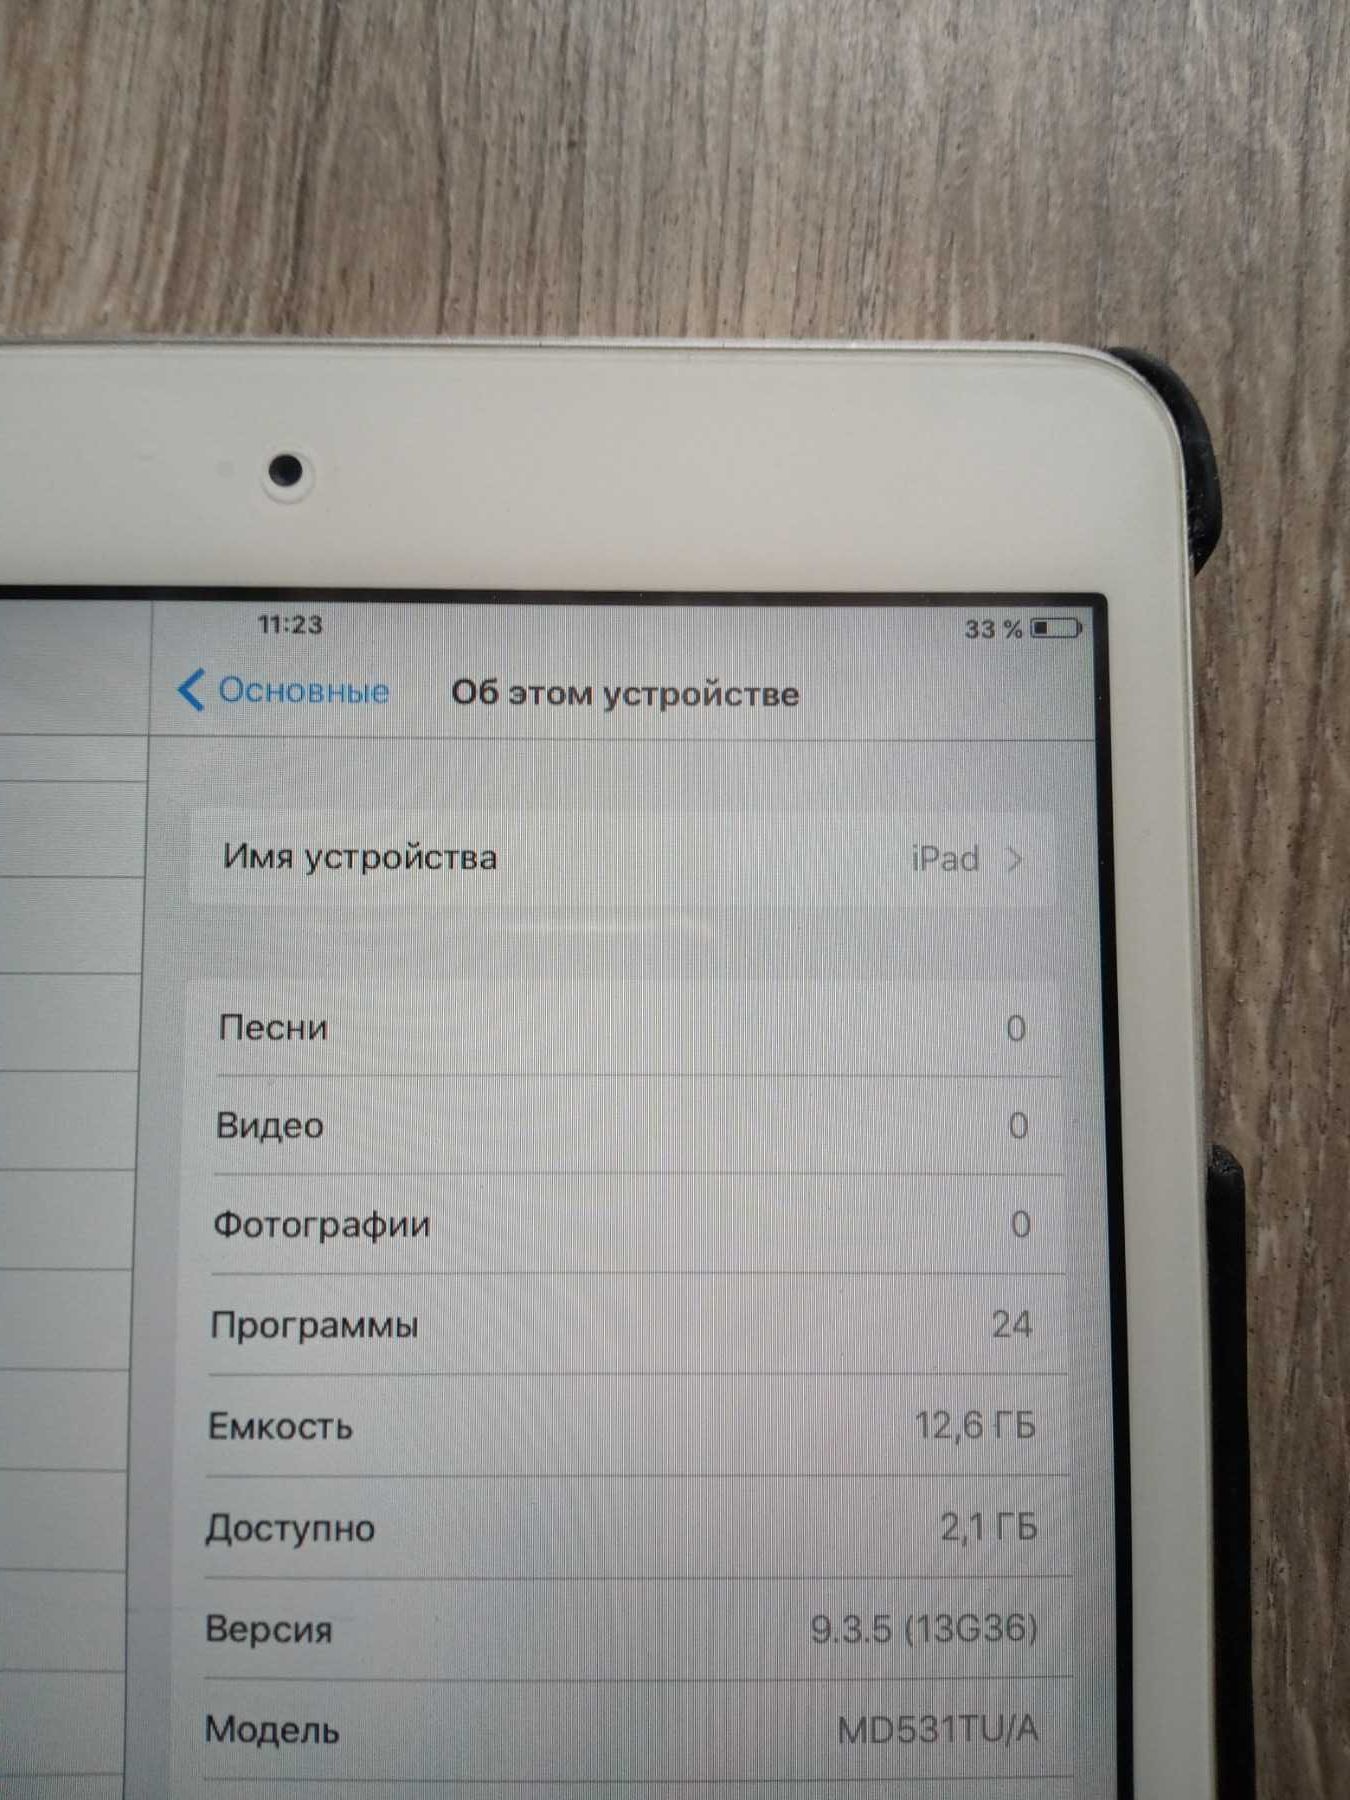 Apple iPad mini 1 (MD531TU/A), 16GB, Wi-Fi.